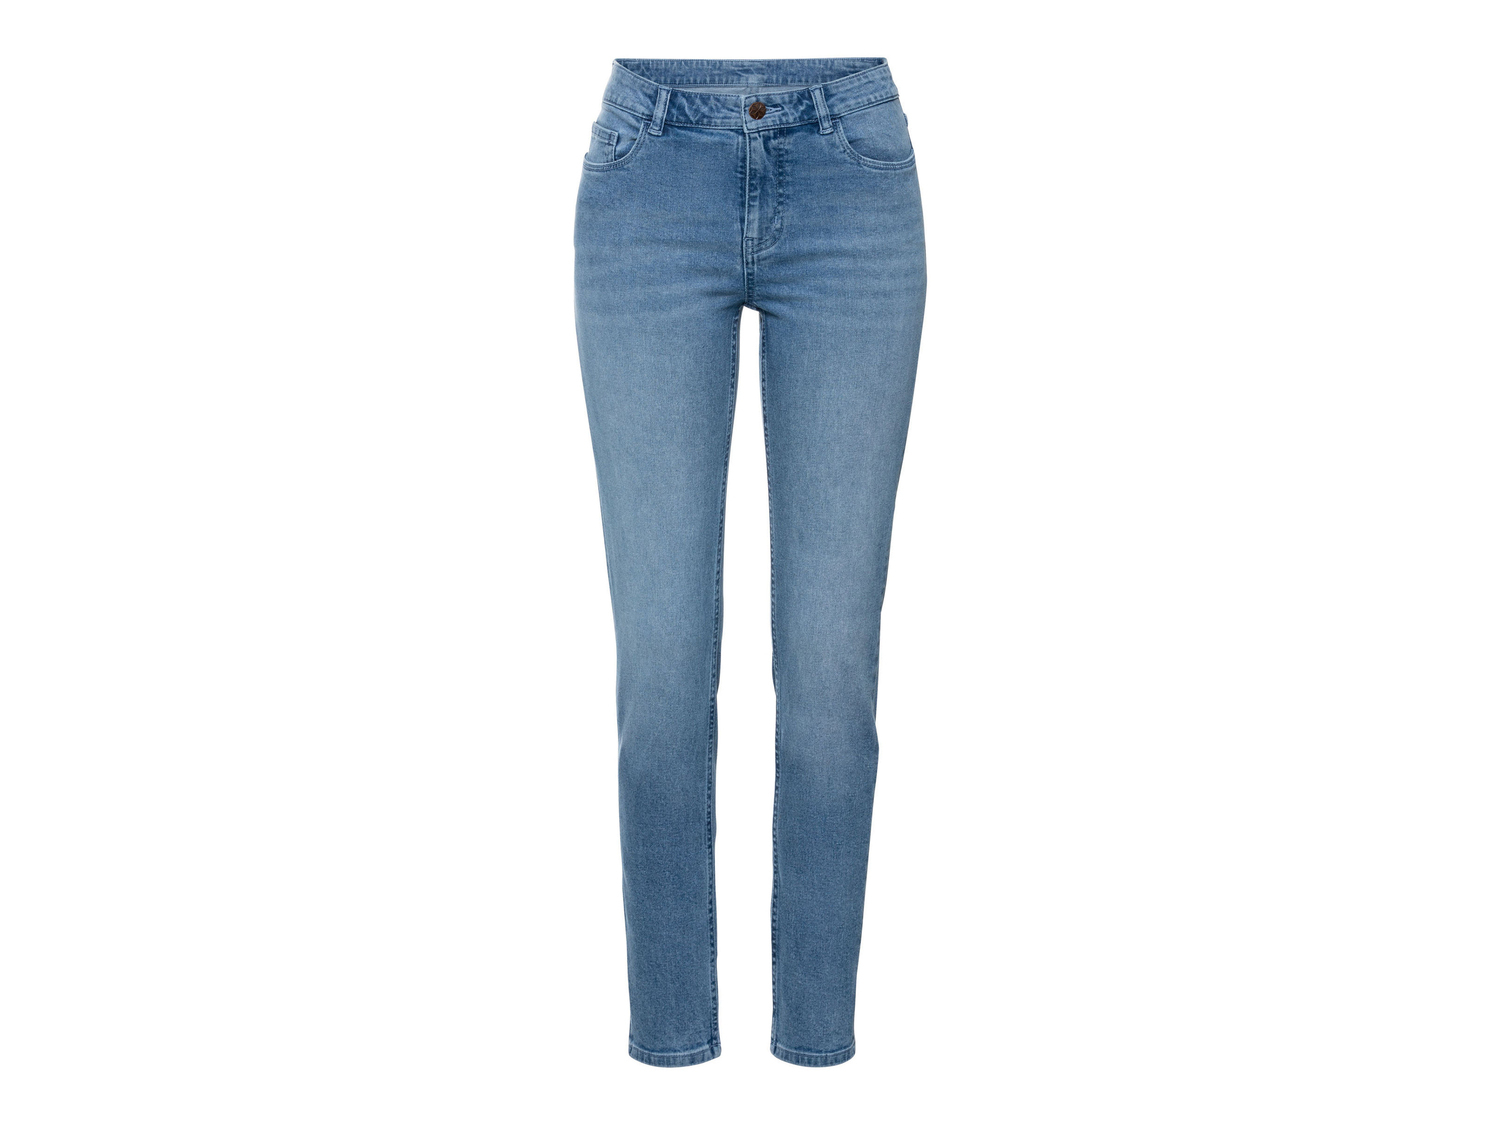 Jeans Skinny da donna Esmara, prezzo 12.99 &#8364; 
Misure: 38-48
Taglie disponibili

Caratteristiche

- ...